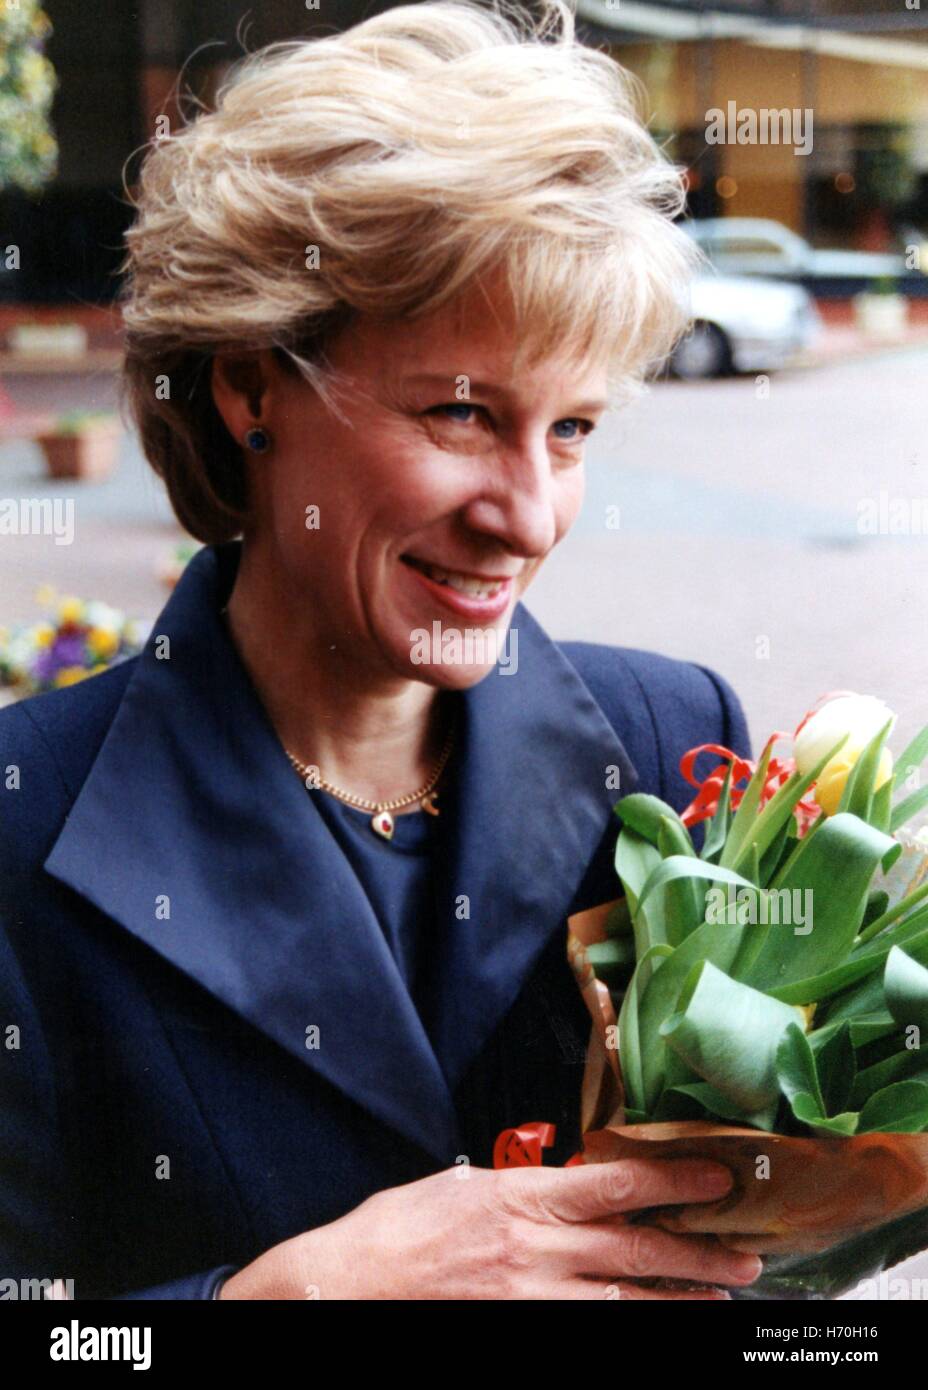 Di SUA ALTEZZA REALE IL PRINCIPE DI GALLES la Duchessa di Gloucester arriva a Harrogate Centro internazionale di conferenze di aprile 1999 Foto Stock